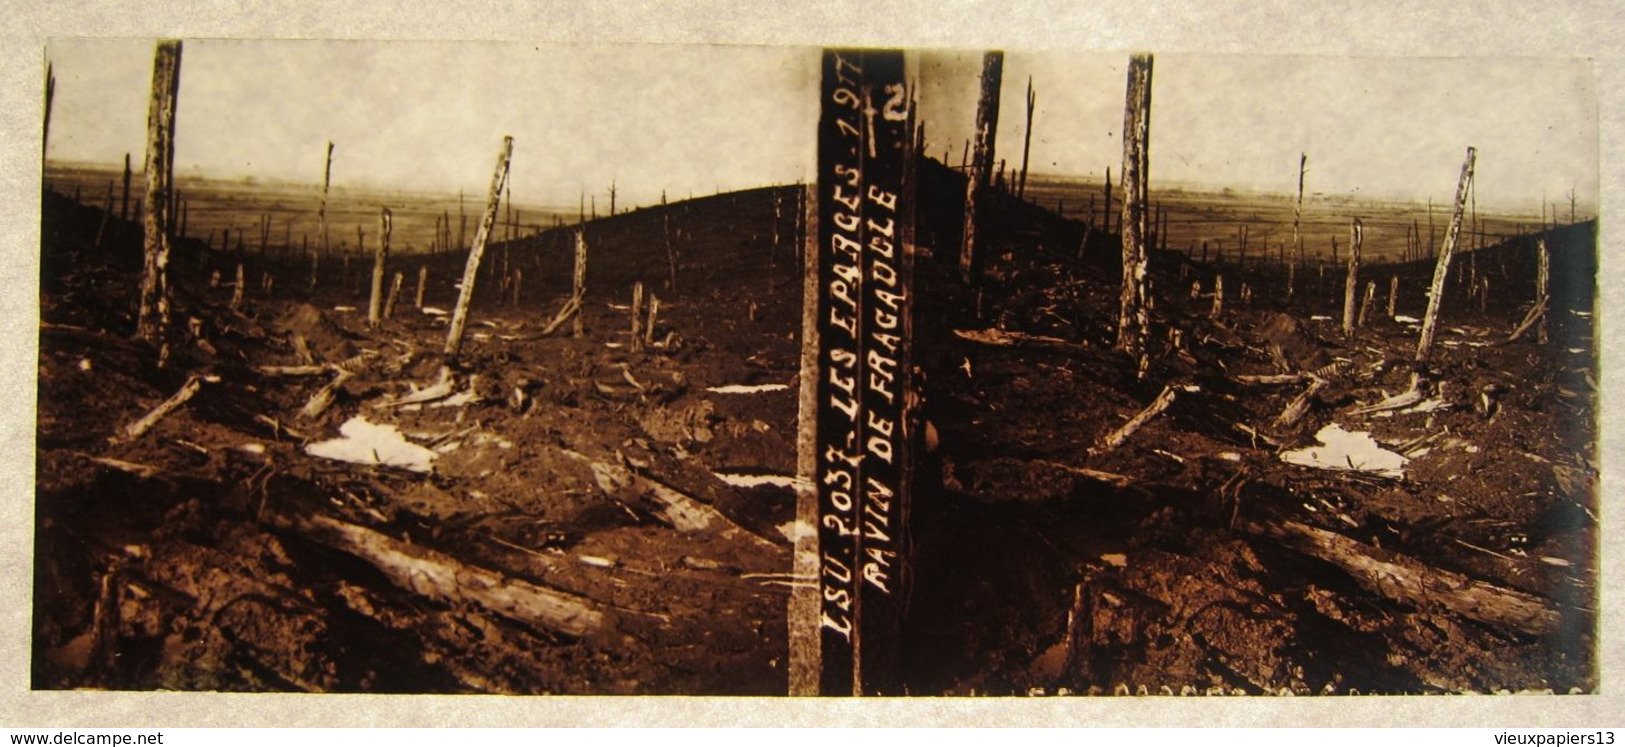 Belle collection 49 photos plaques de verre stéréo LSU Guerre 1914 1918 - 10,5x4,5 cm - tranchées cadavres Eparges &c